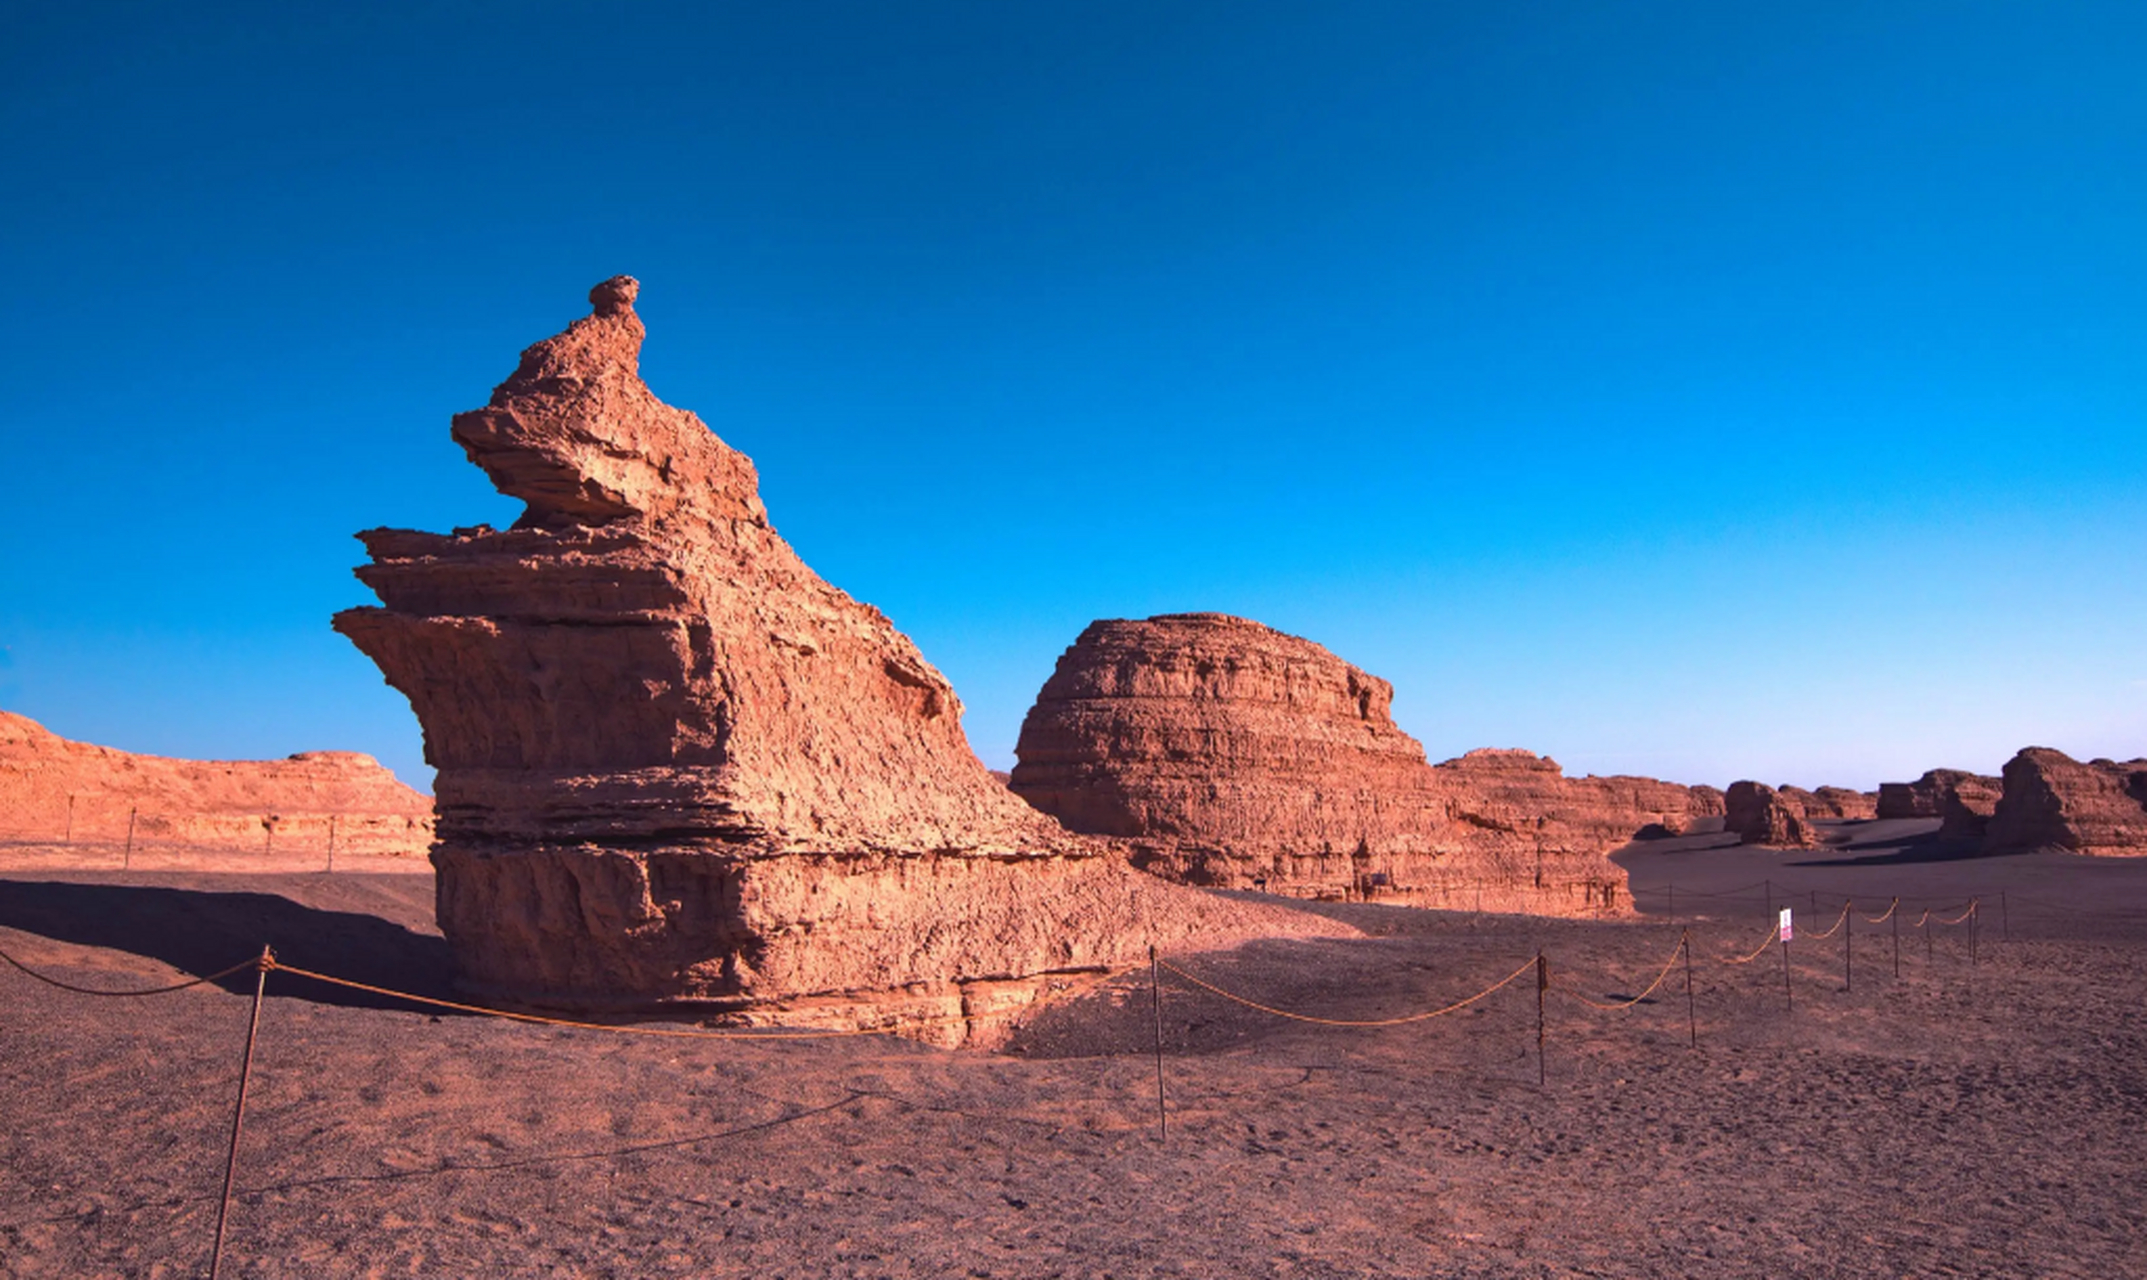 敦煌世界地质公园是甘肃著名的旅游胜地,拥有雅丹地貌,沙漠戈壁,月牙